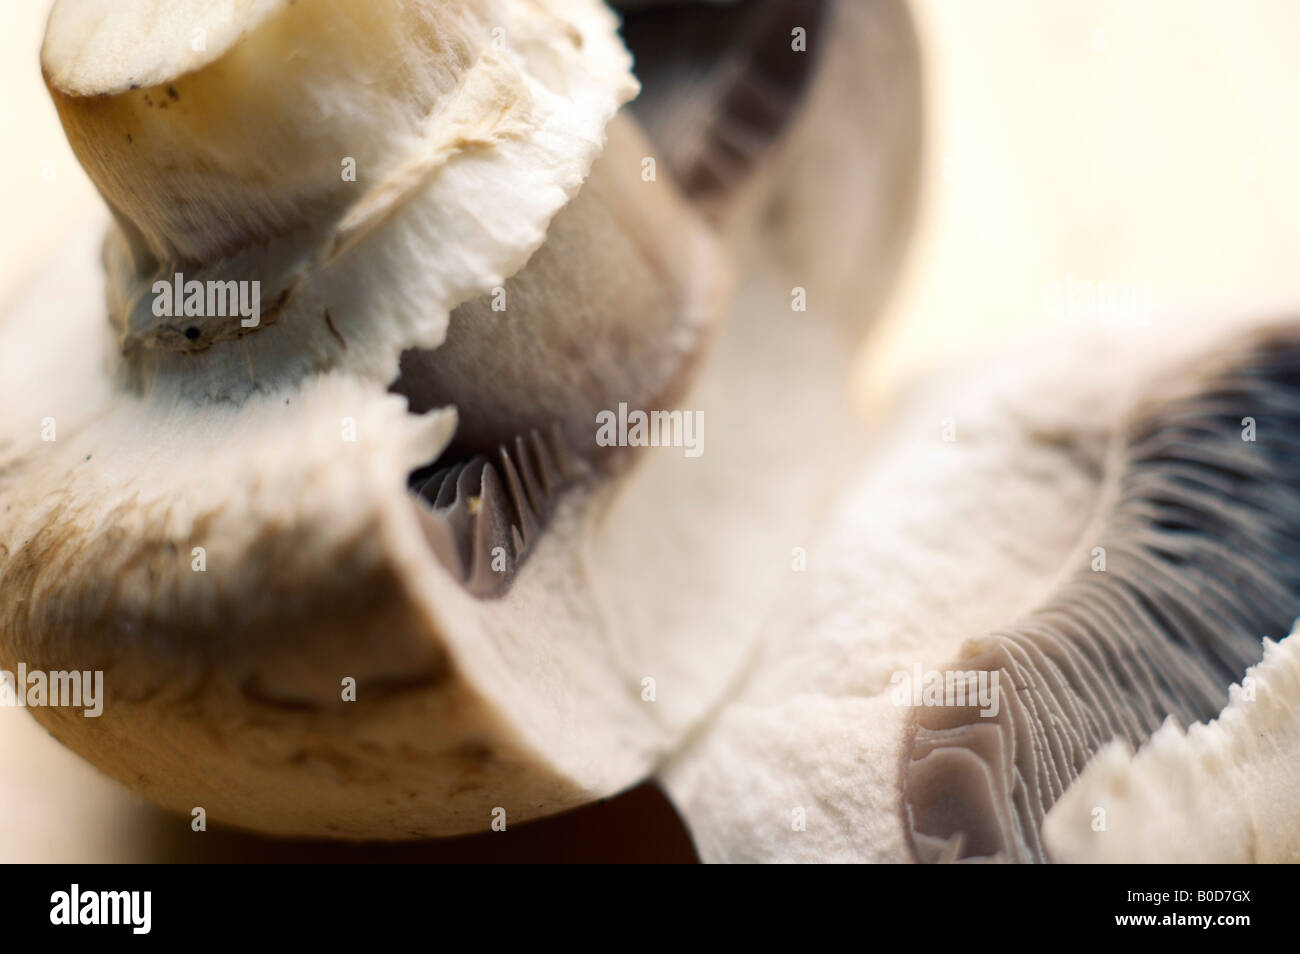 Fresh mushroom opened revealing gills Stock Photo